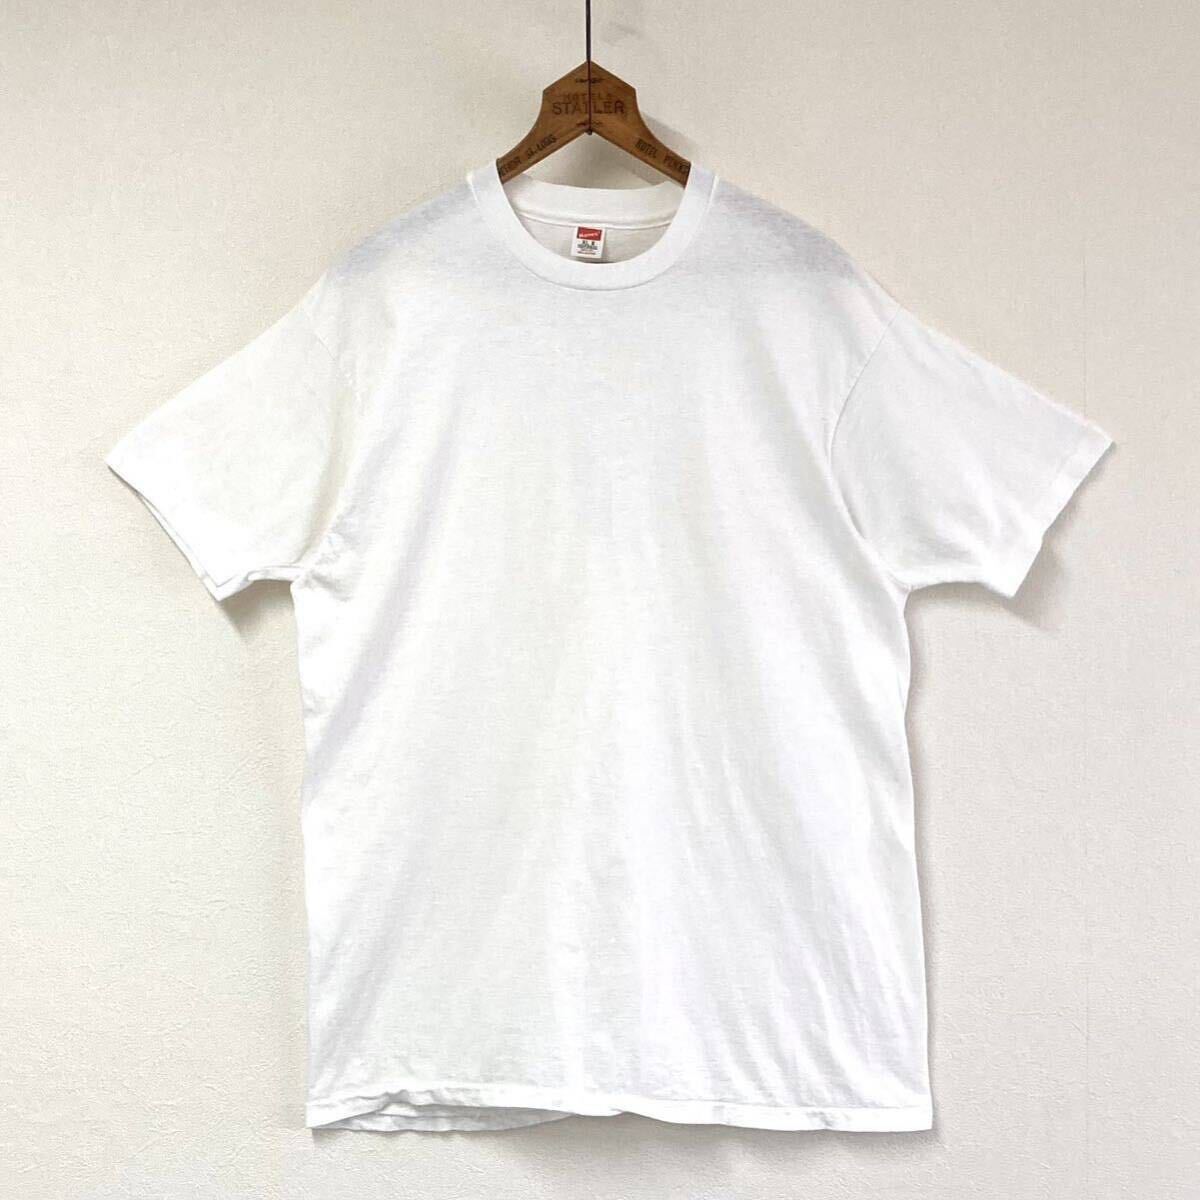 80s【HANES】無地 ホワイト Tシャツ size XL 46/48 USA製 裾袖シングル コットン100% ヴィンテージ/ヘインズ 白Tee アメリカ製 70s_画像1